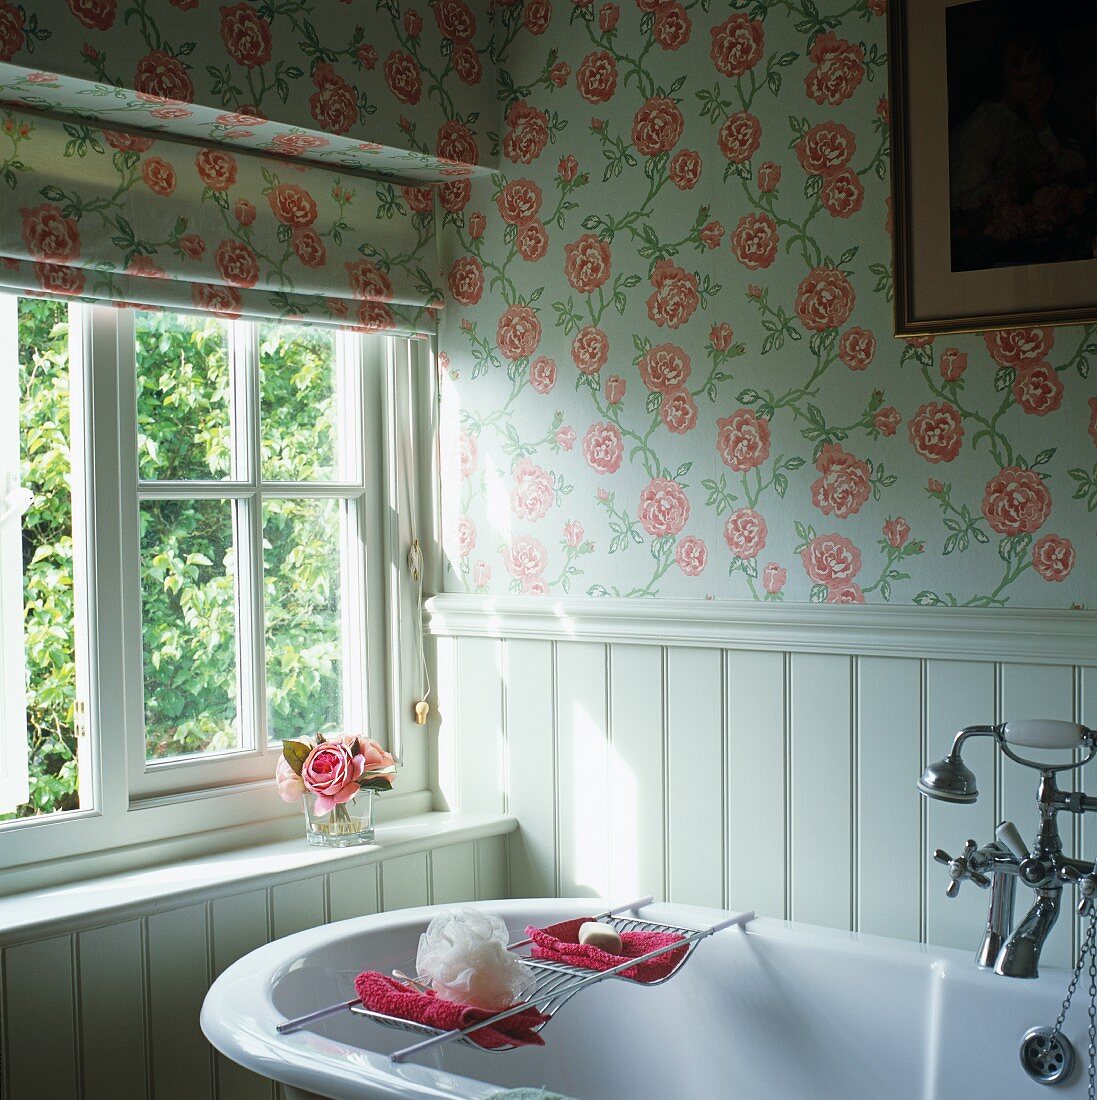 Vintage Badewanne vor Fenster im Badezimmer mit gleichem Rosenmuster auf Rollo und Tapete